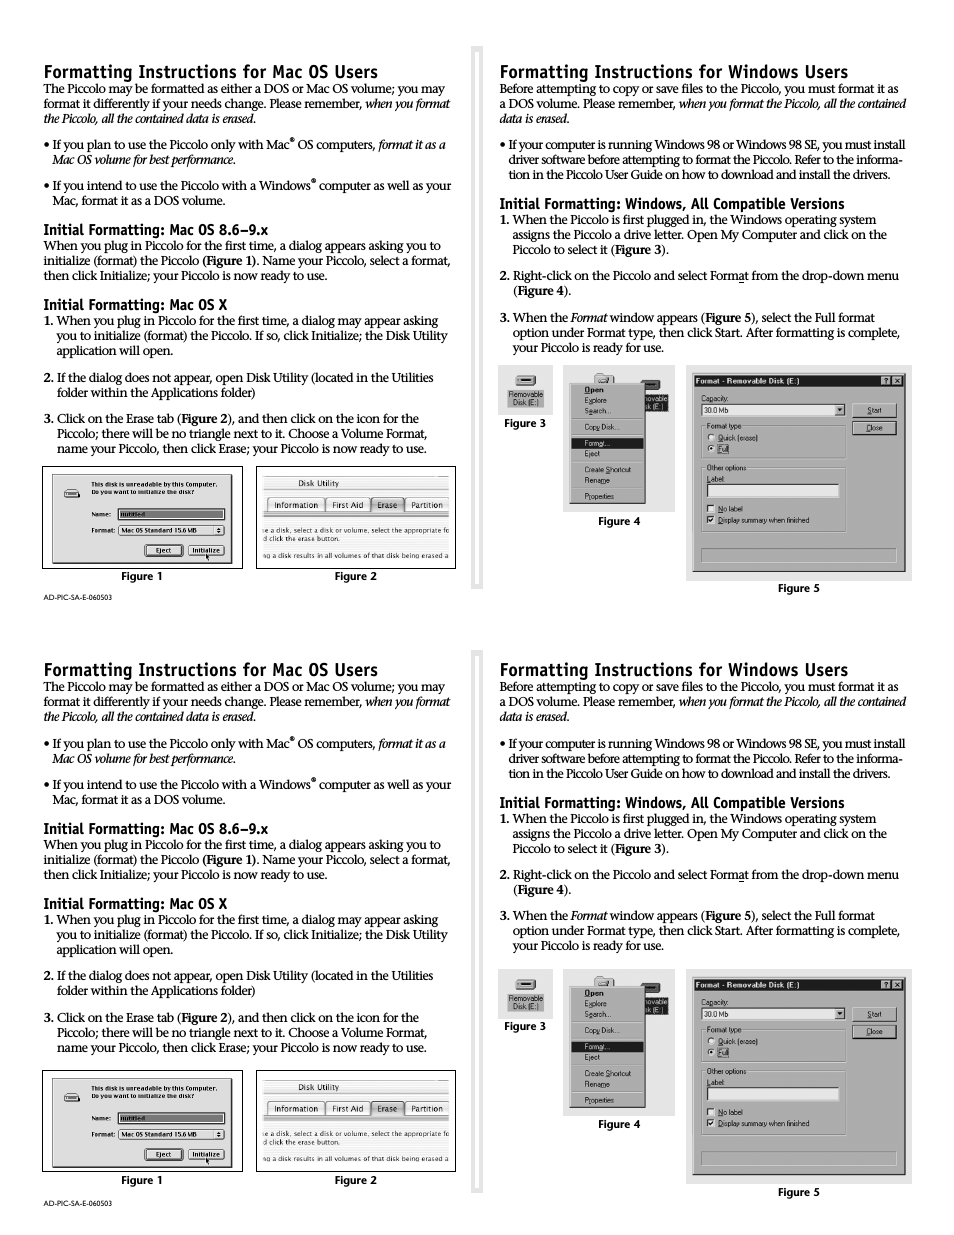 Piccolo USB Flash Drive Formatting Info Guide [English]